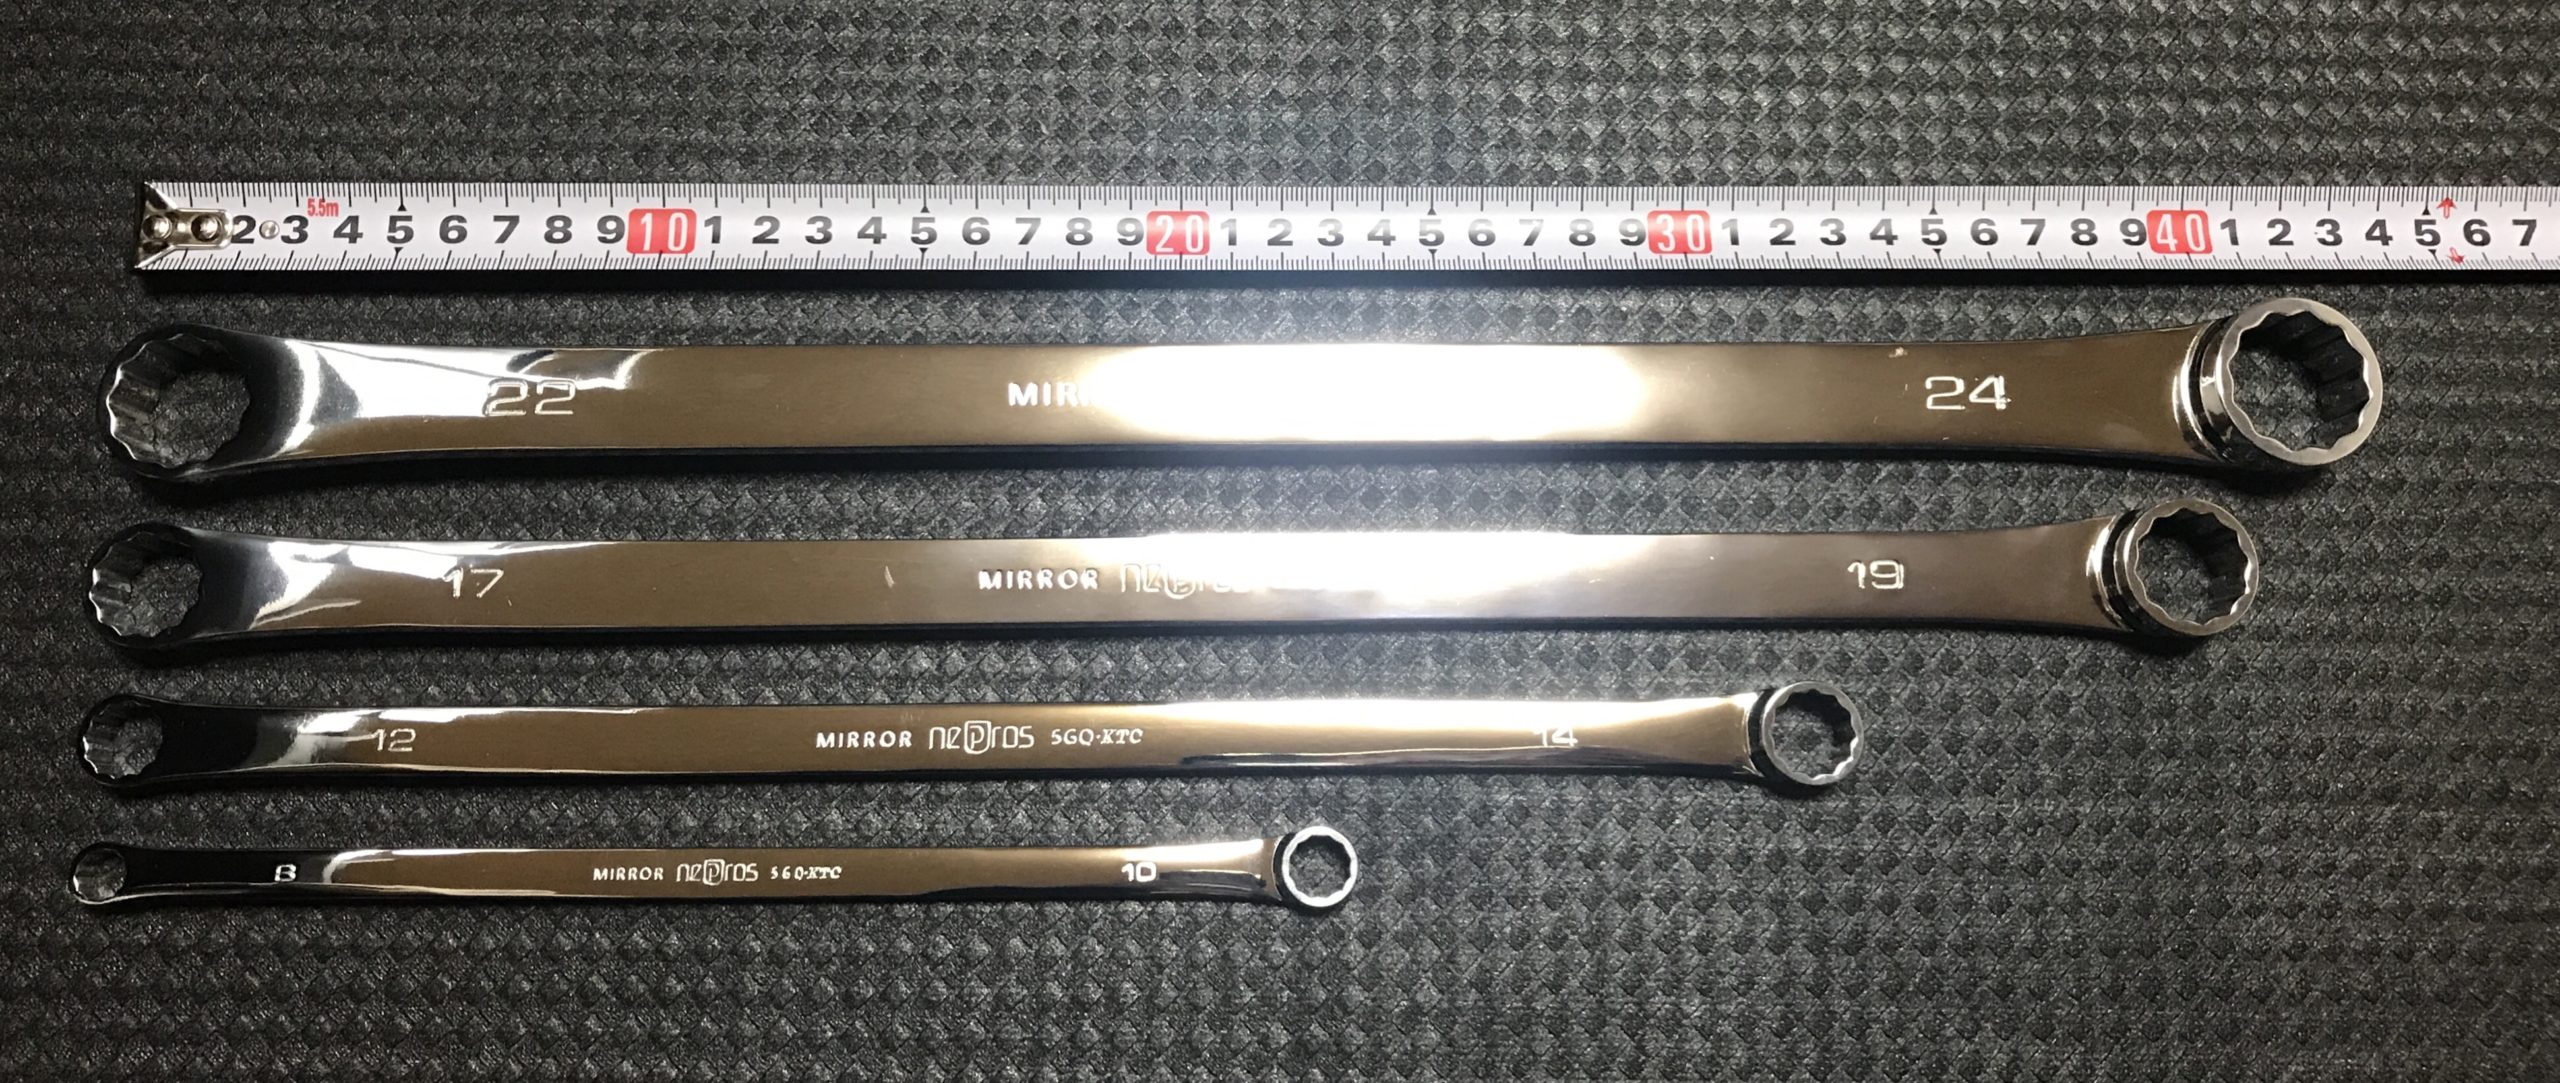 京都機械工具(KTC) ネプロス S字めがねレンチ NM12-18 - 道具、工具